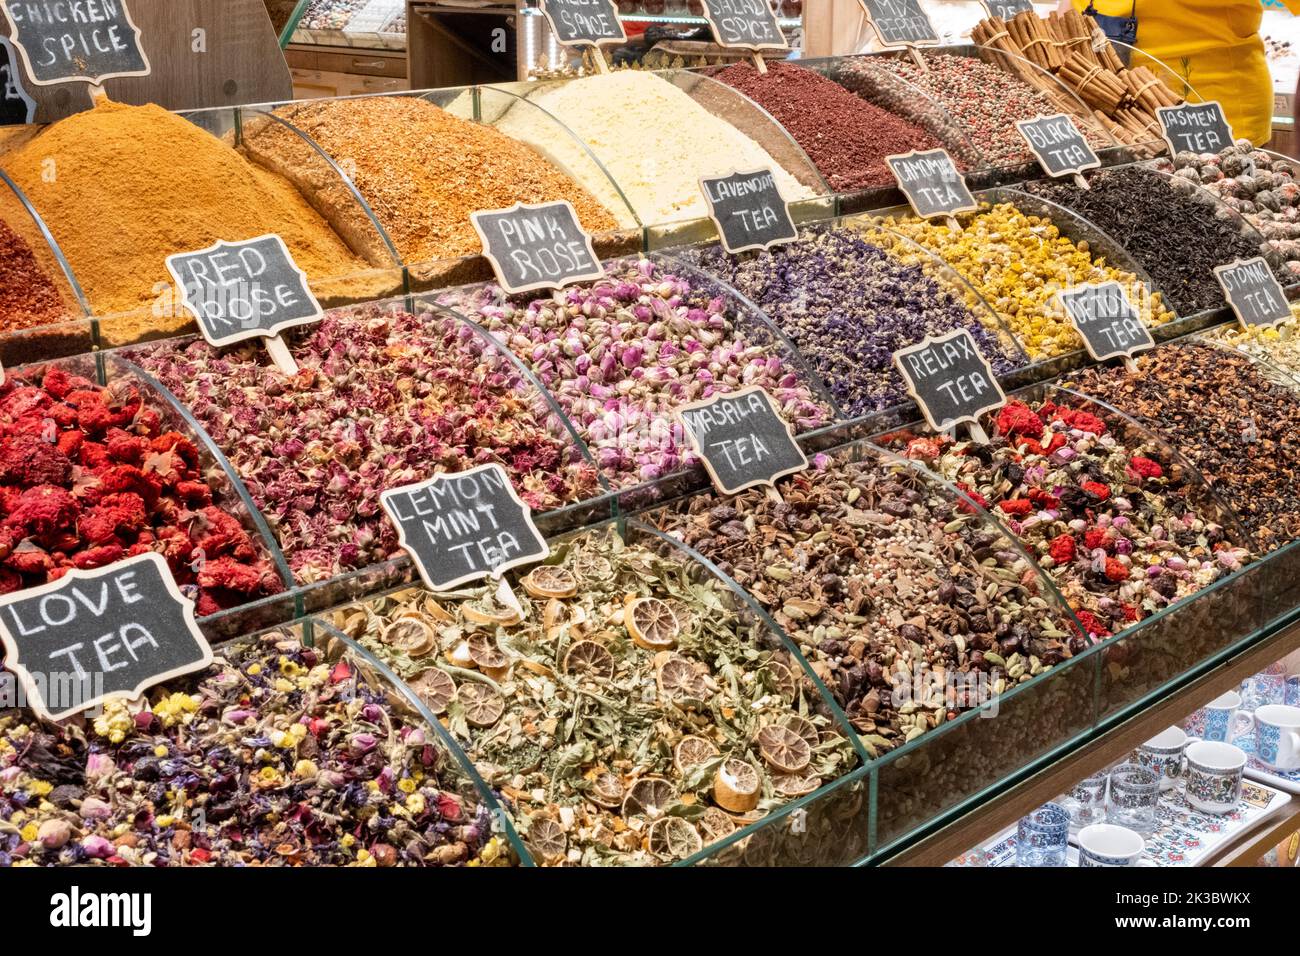 Images de tisanes colorées de Mısır bazar stand, grippe et toux thé, thés traditionnels à Istanbul, shopping dans un bazar turc, produits à base de plantes Banque D'Images